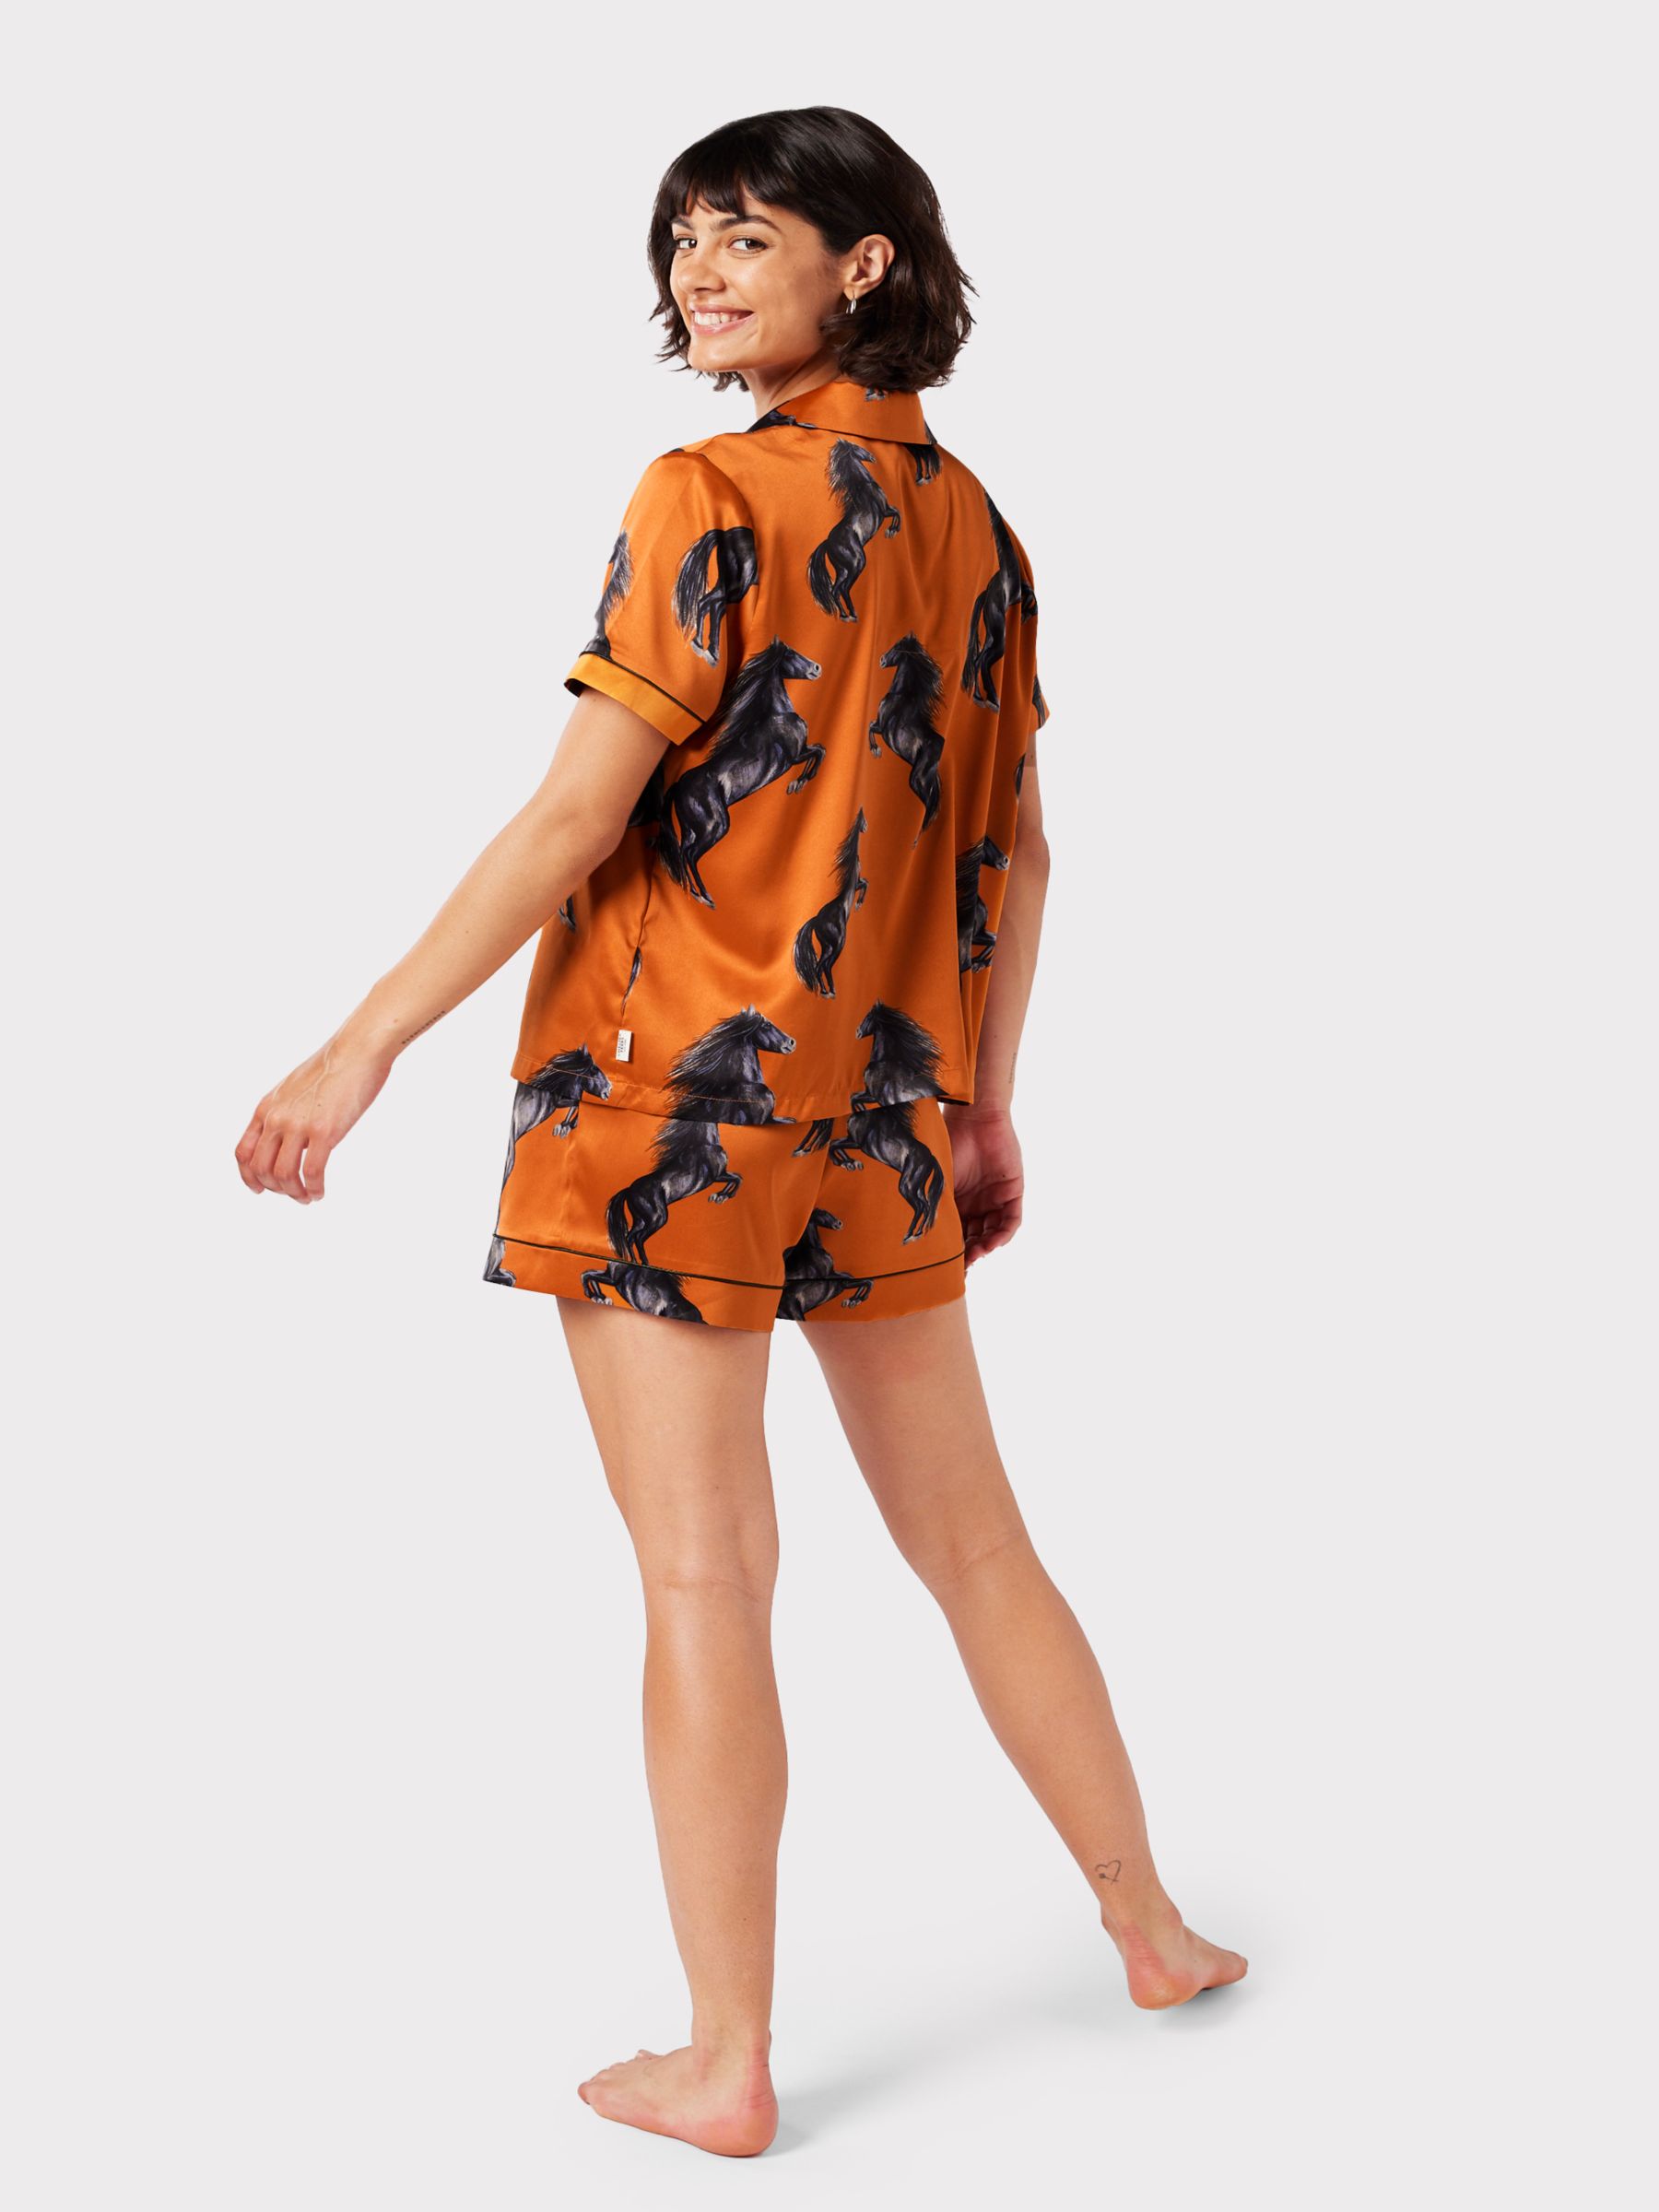 Buy Chelsea Peers Horse Print Shorts Pyjama Set, Orange Online at johnlewis.com